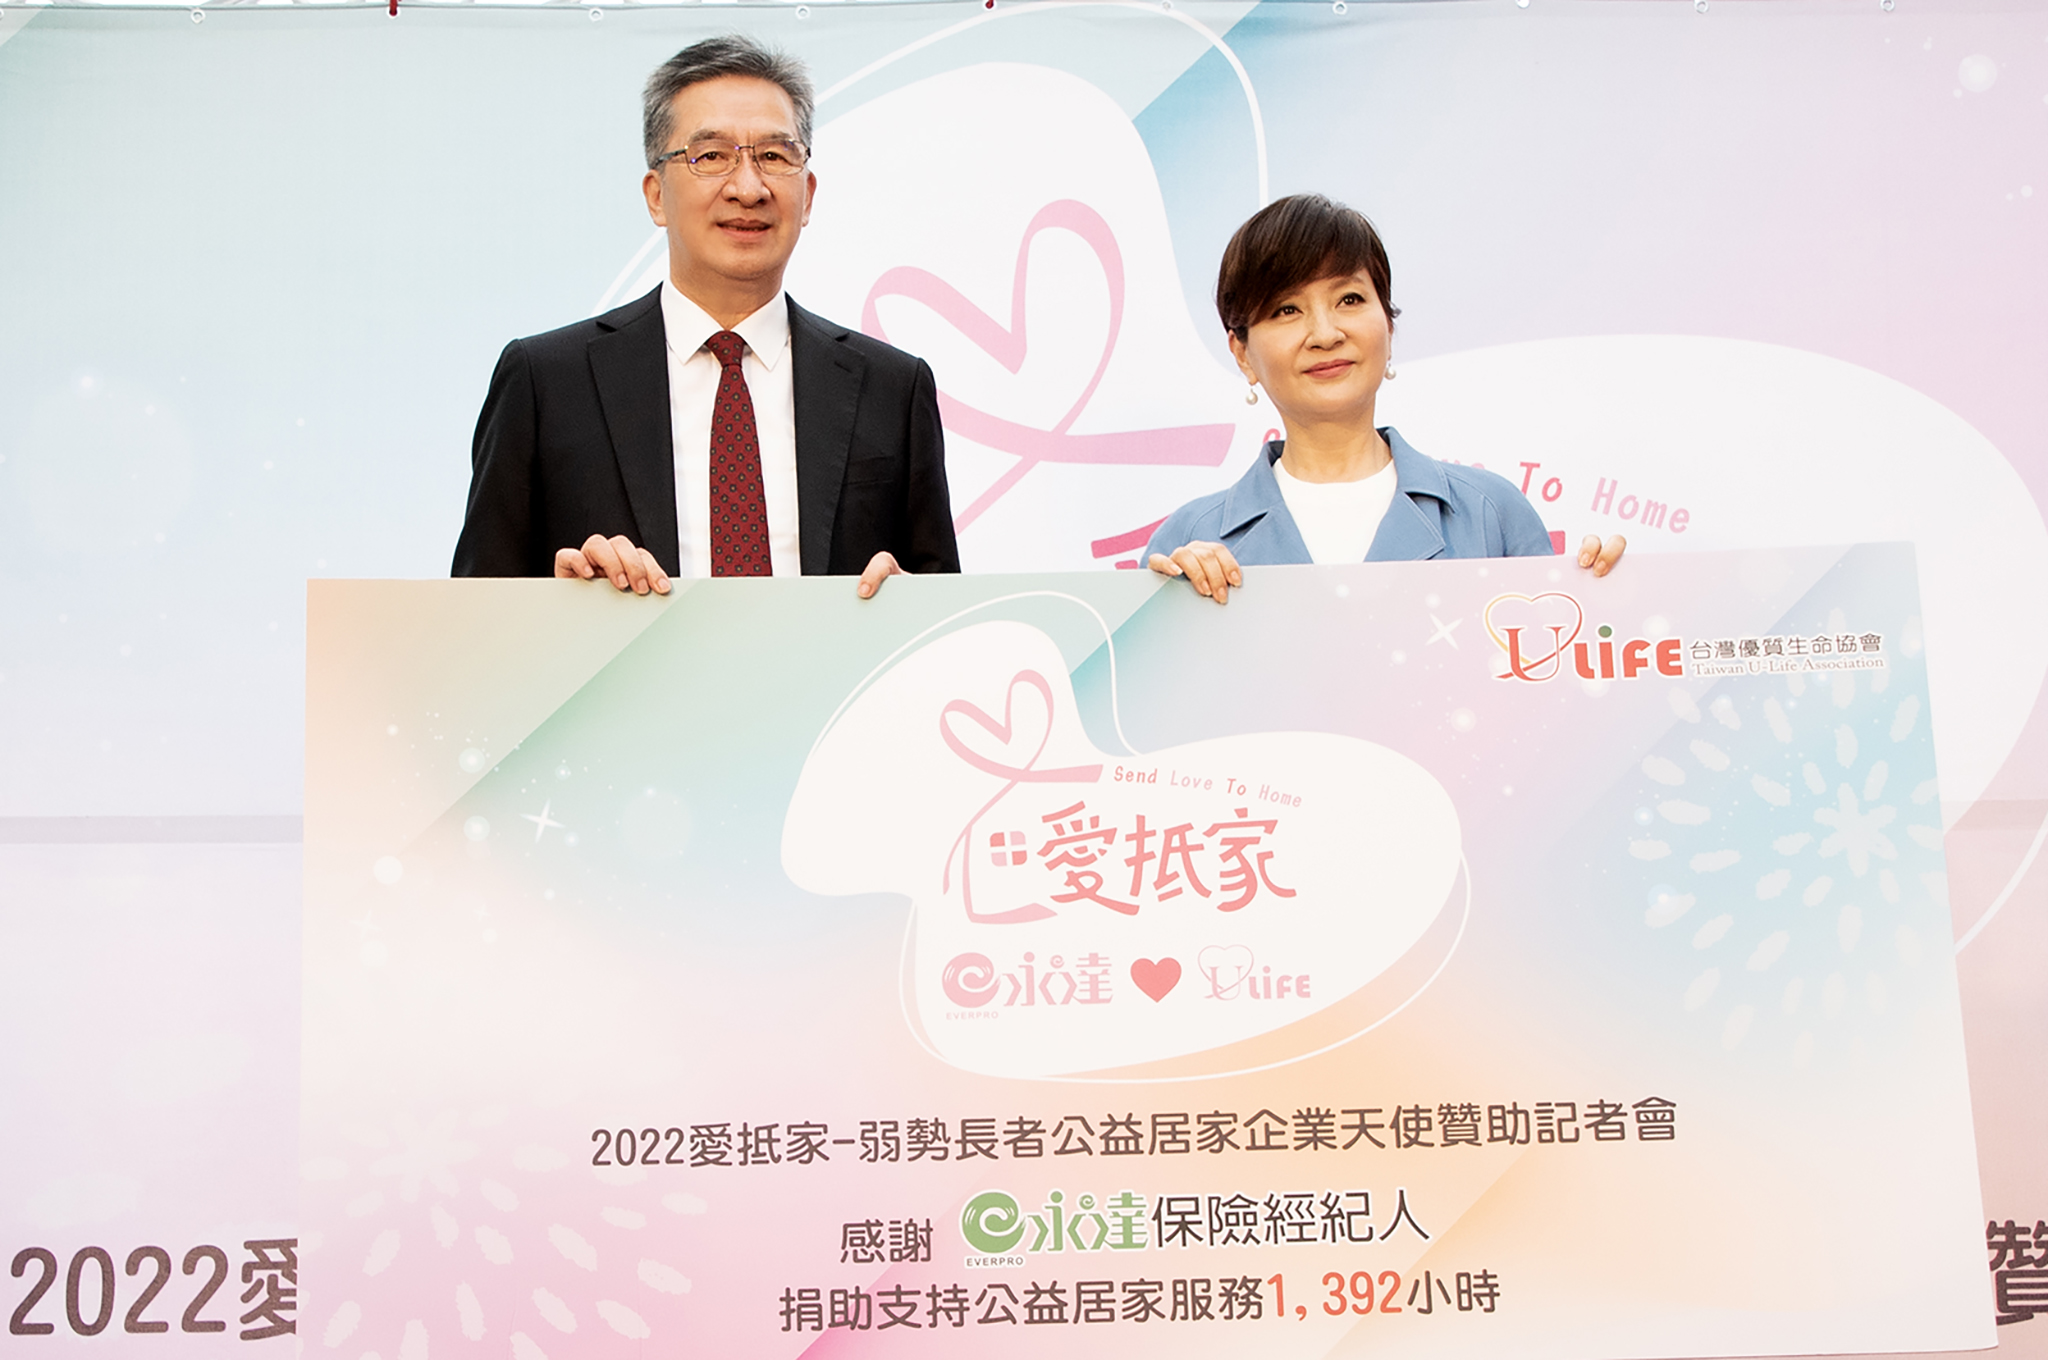 永達保經陳慶鴻總經理（圖左）代表捐助「愛抵家」弱勢長者居家服務1,392小時予台灣優質生命協會，由方芳芳理事長（圖右）受贈，成為第一個愛天使贊助企業。